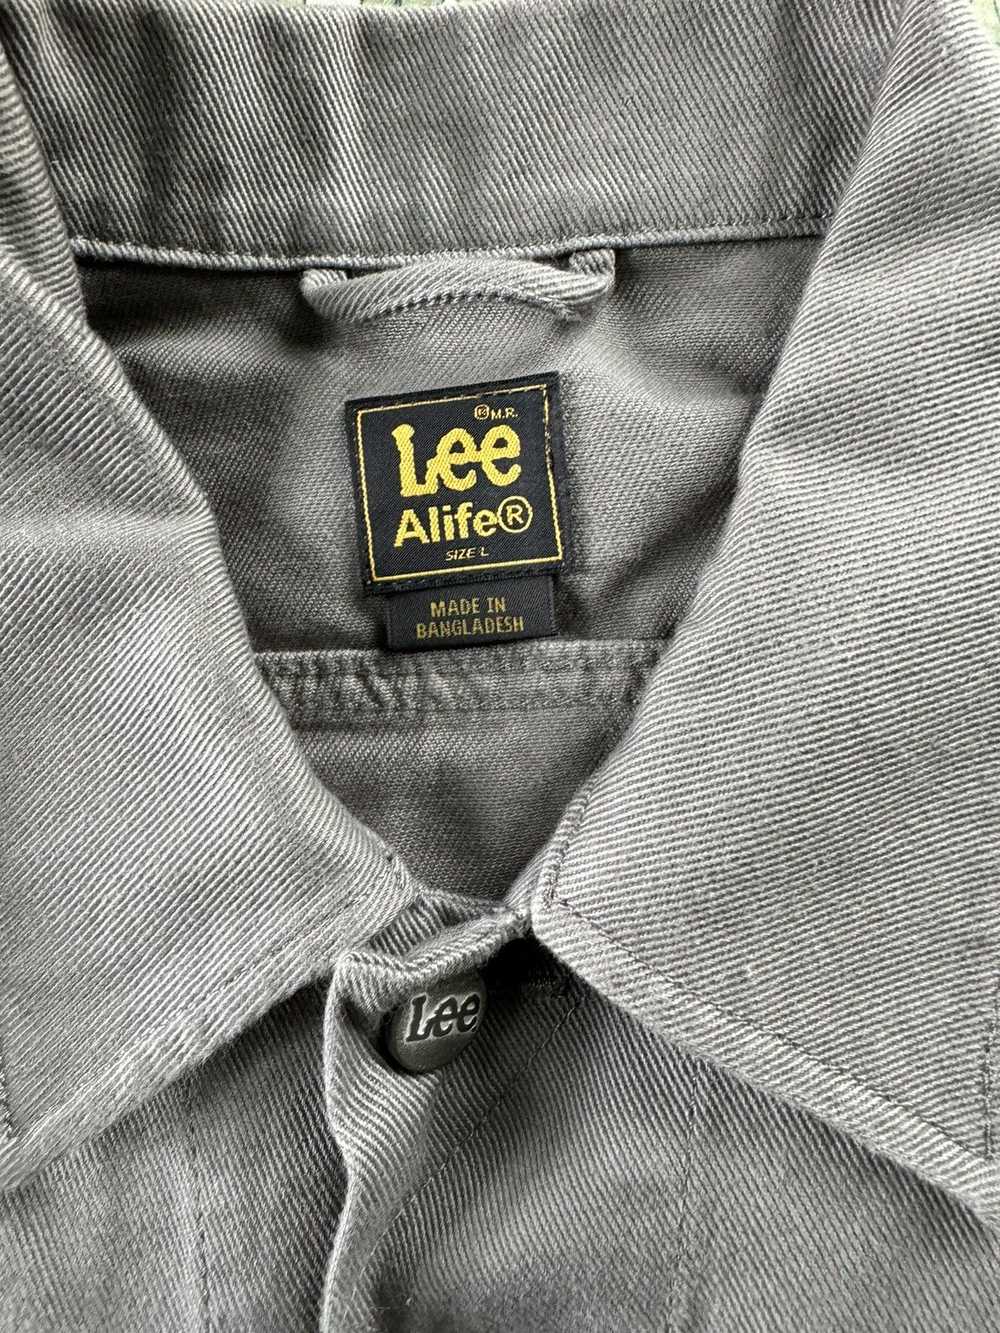 Alife × Lee Alife x Lee twill light jacket - image 3